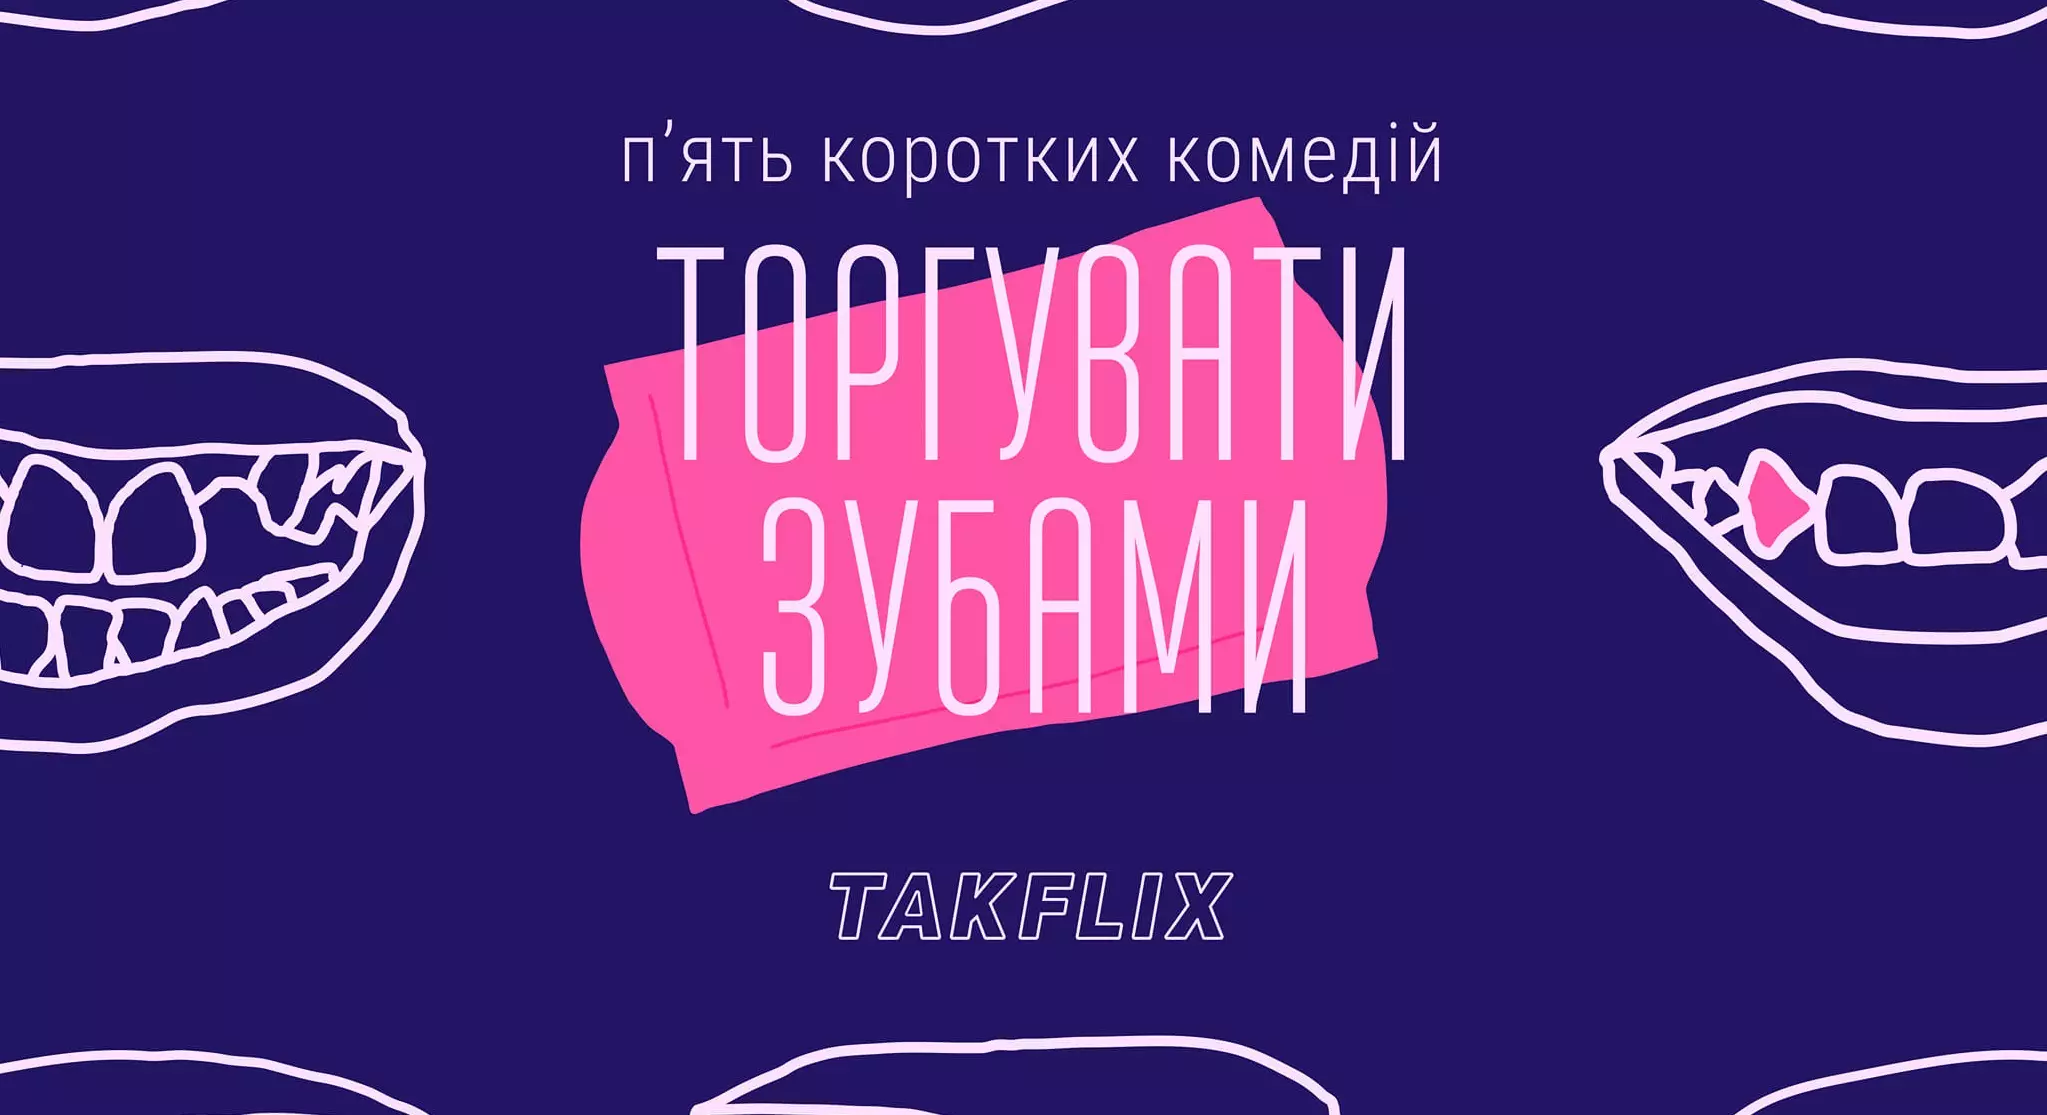 Takflix виклав добірку українських комедійних короткометражок «Торгувати зубами»